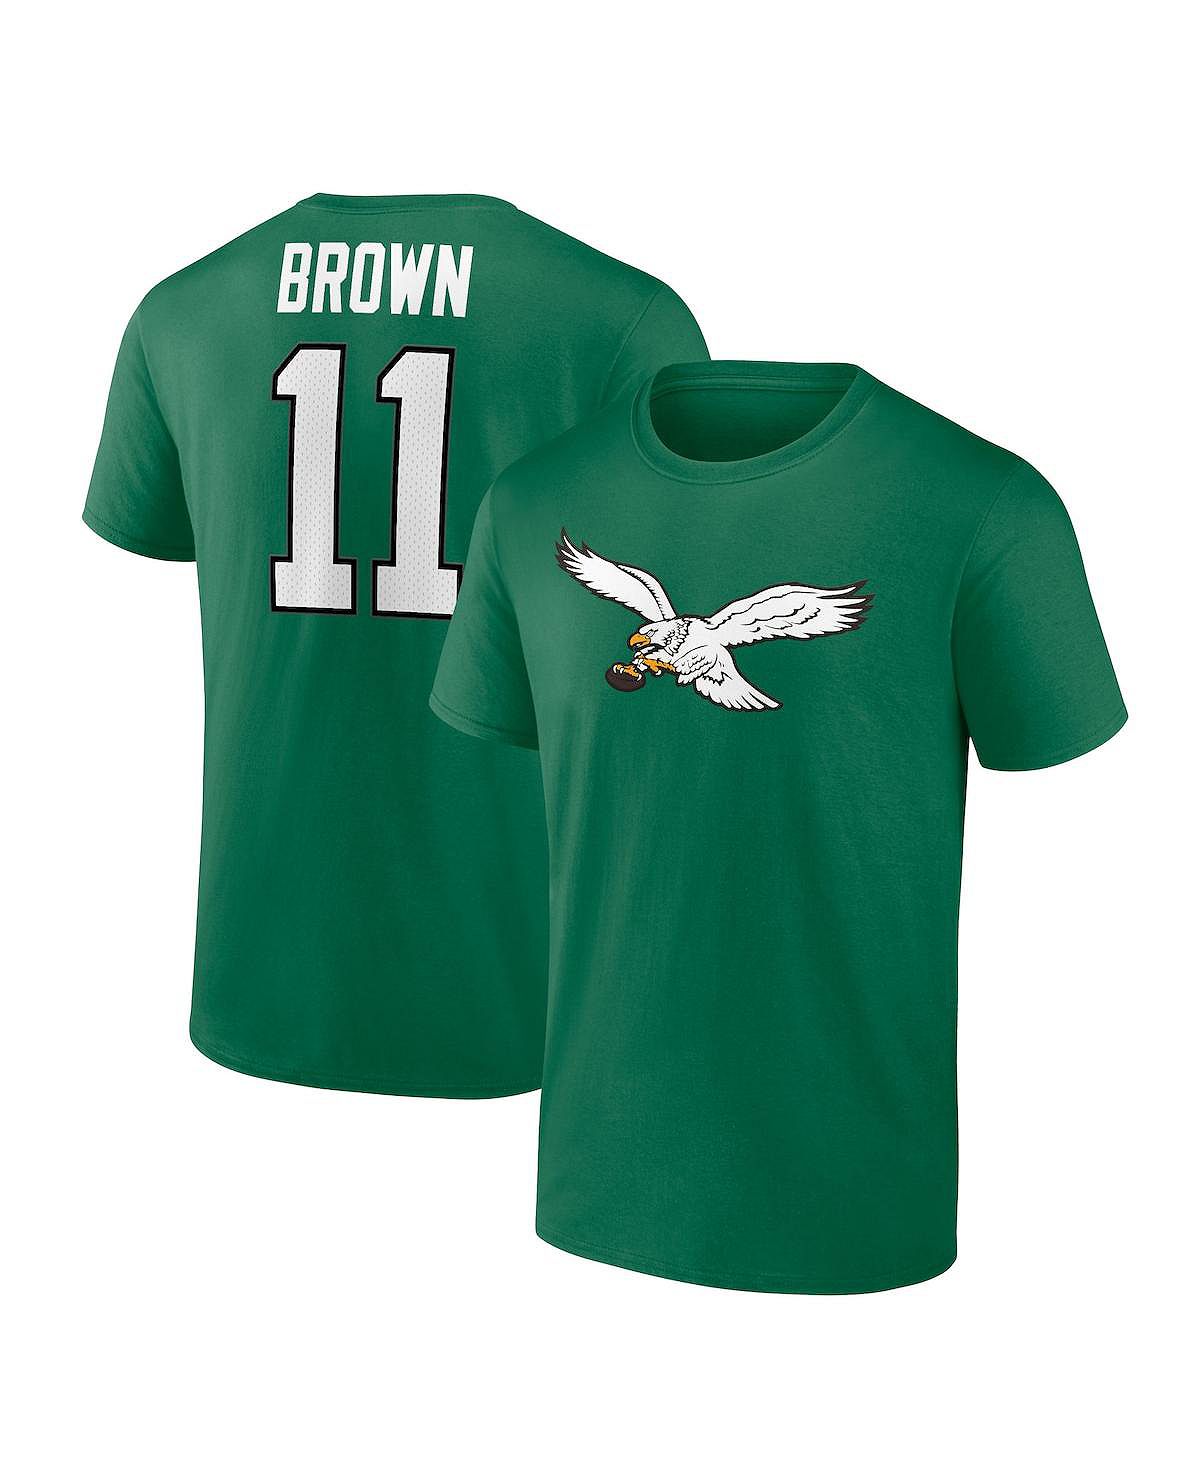 Мужская брендовая одежда A.J. Коричневая футболка Kelly Green Philadelphia Eagles со значком игрока, именем и номером Fanatics эй джей бэйм ford против ferrari